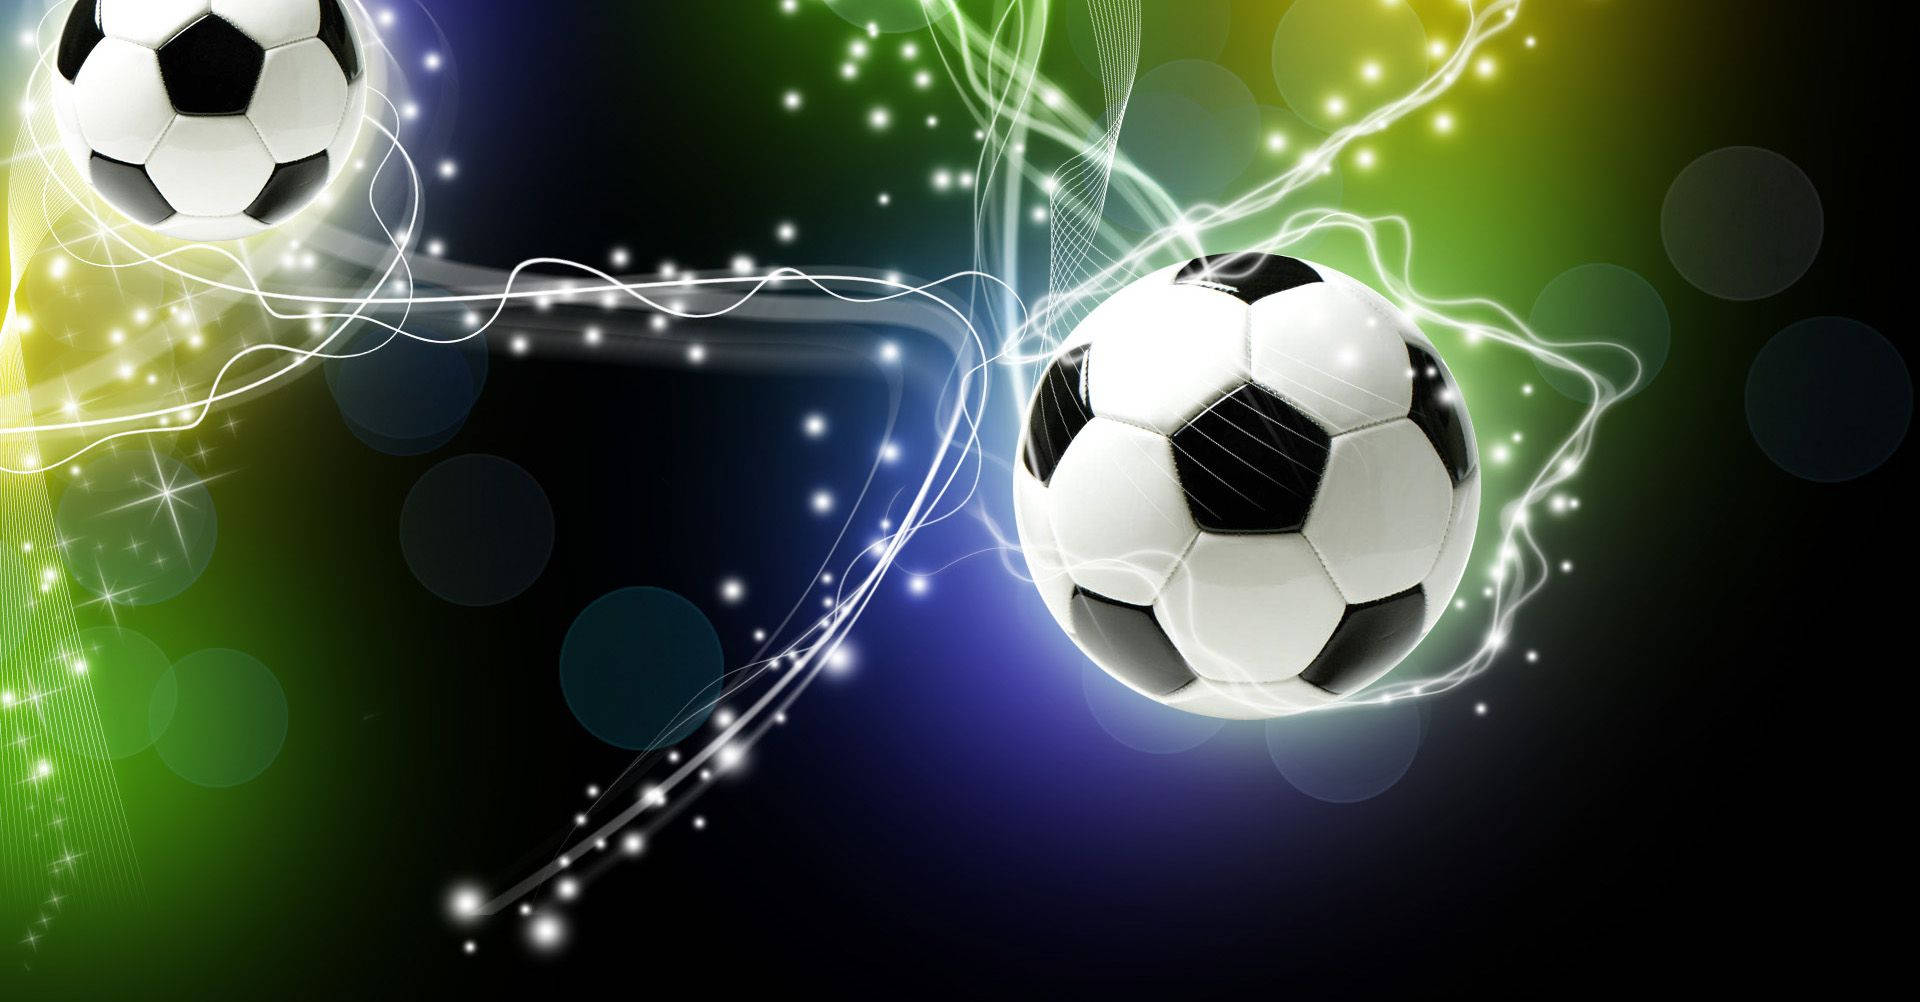 Cool Soccer Balls Fantasy Design Background